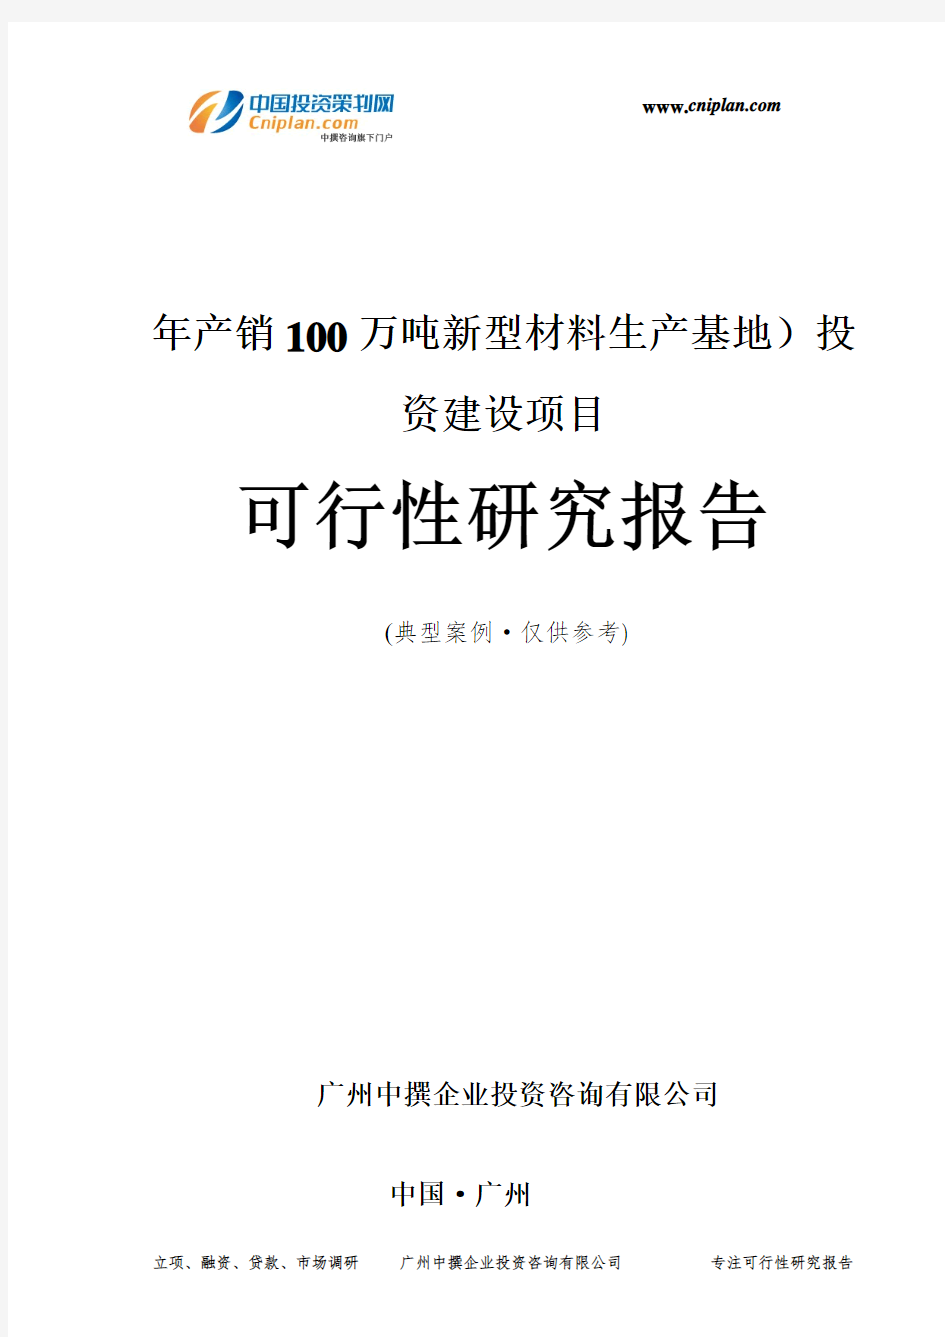 年产销100万吨新型材料生产基地)投资建设项目可行性研究报告-广州中撰咨询